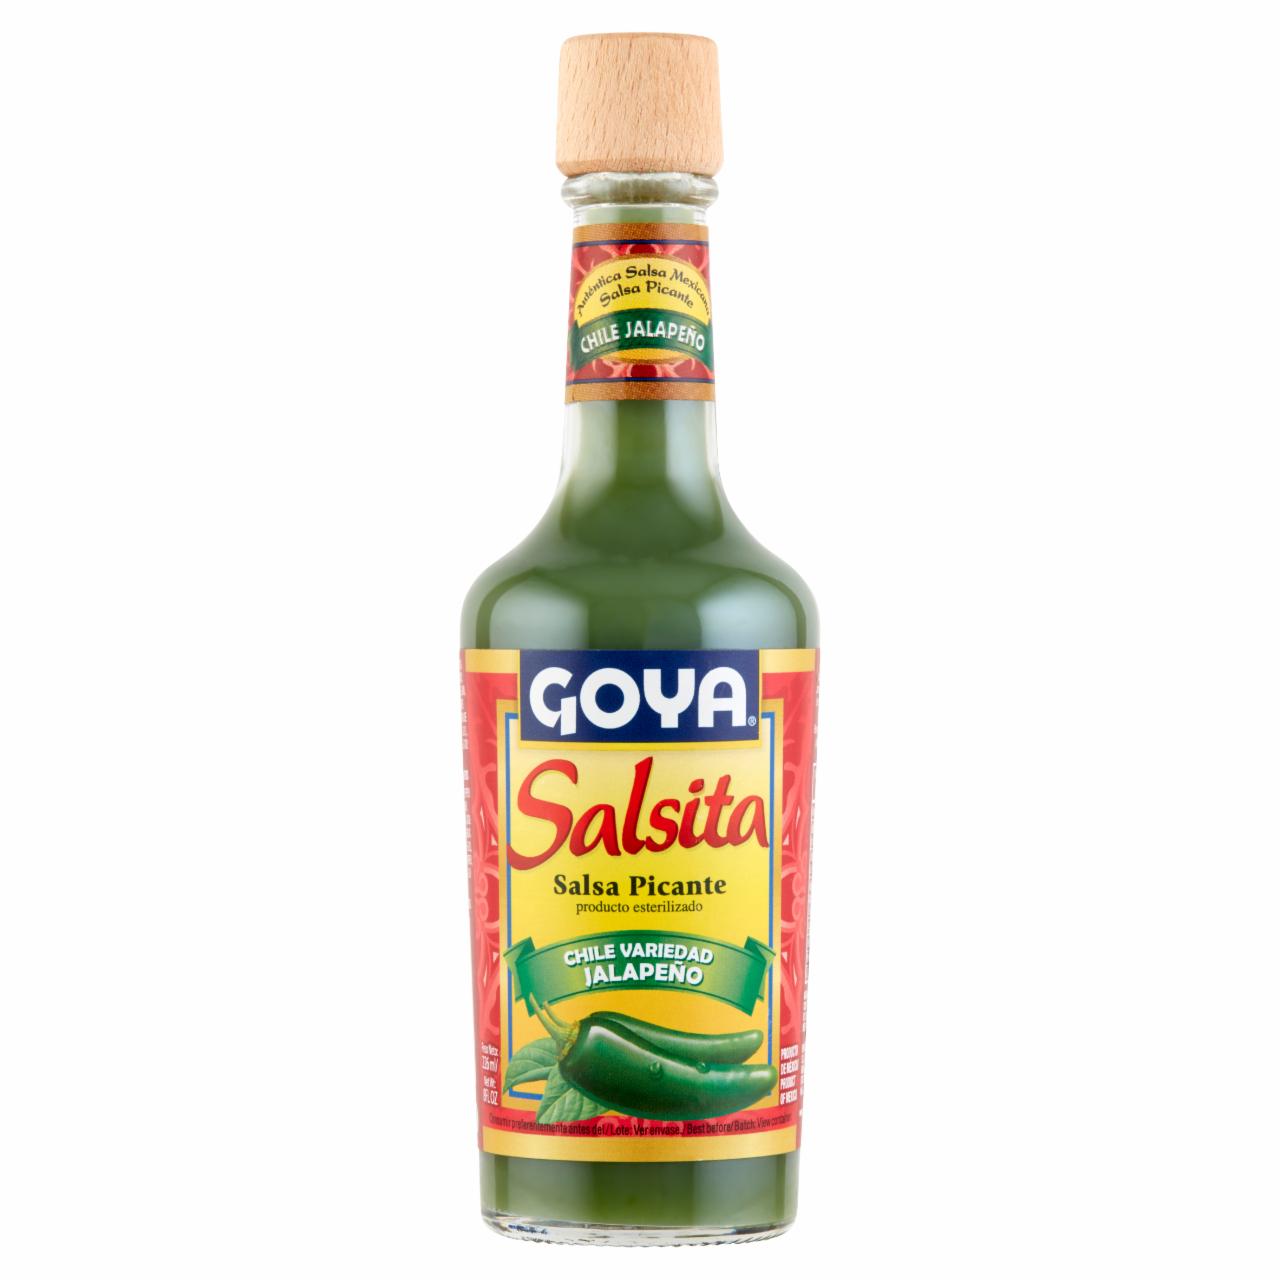 Képek - Goya fűszeres csípős szósz Jalapeño chill paprikából 226 ml